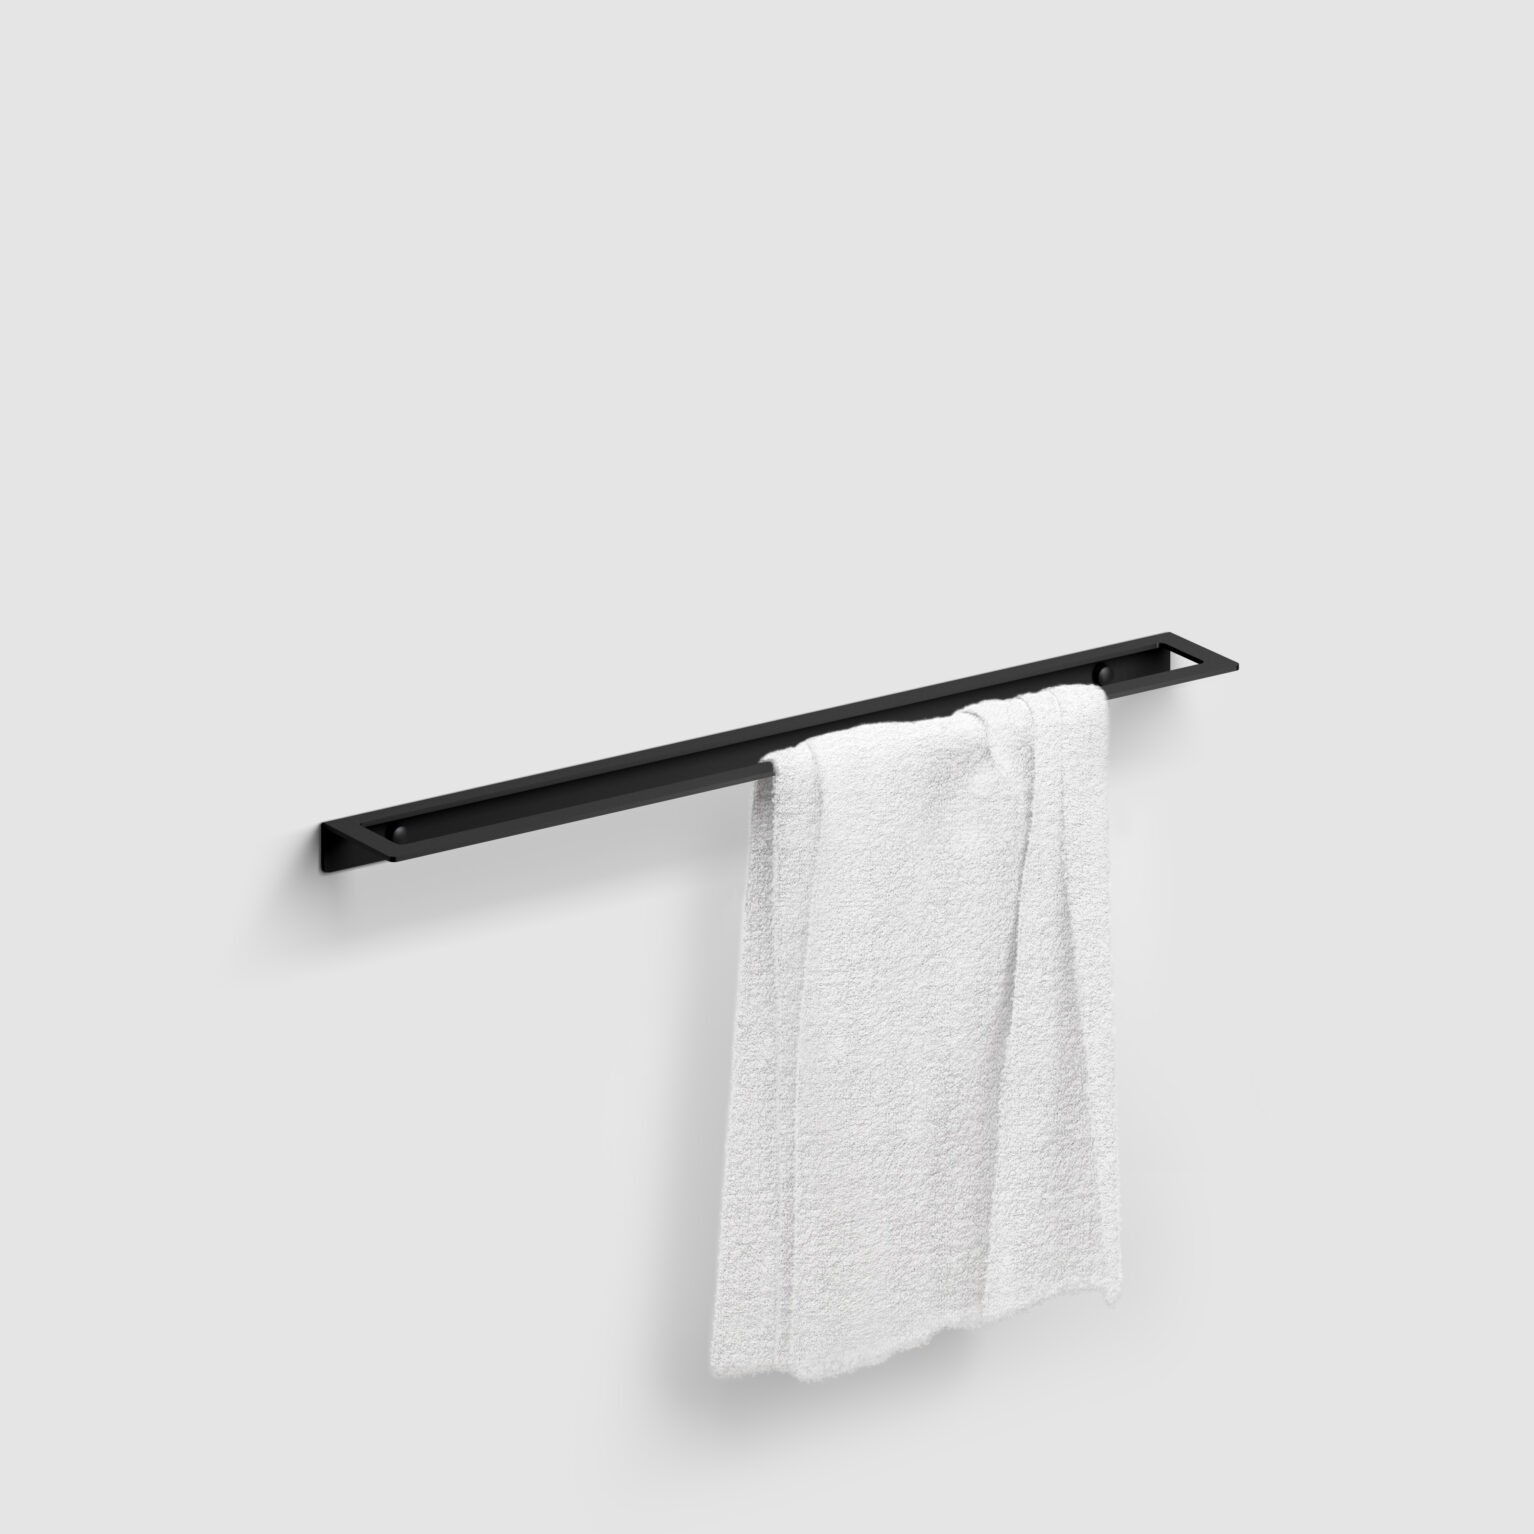 handdoek-rek-60-cm-mat-zwart-toilet-badkamer-luxe-sanitair-Fold-clou-CL090405721